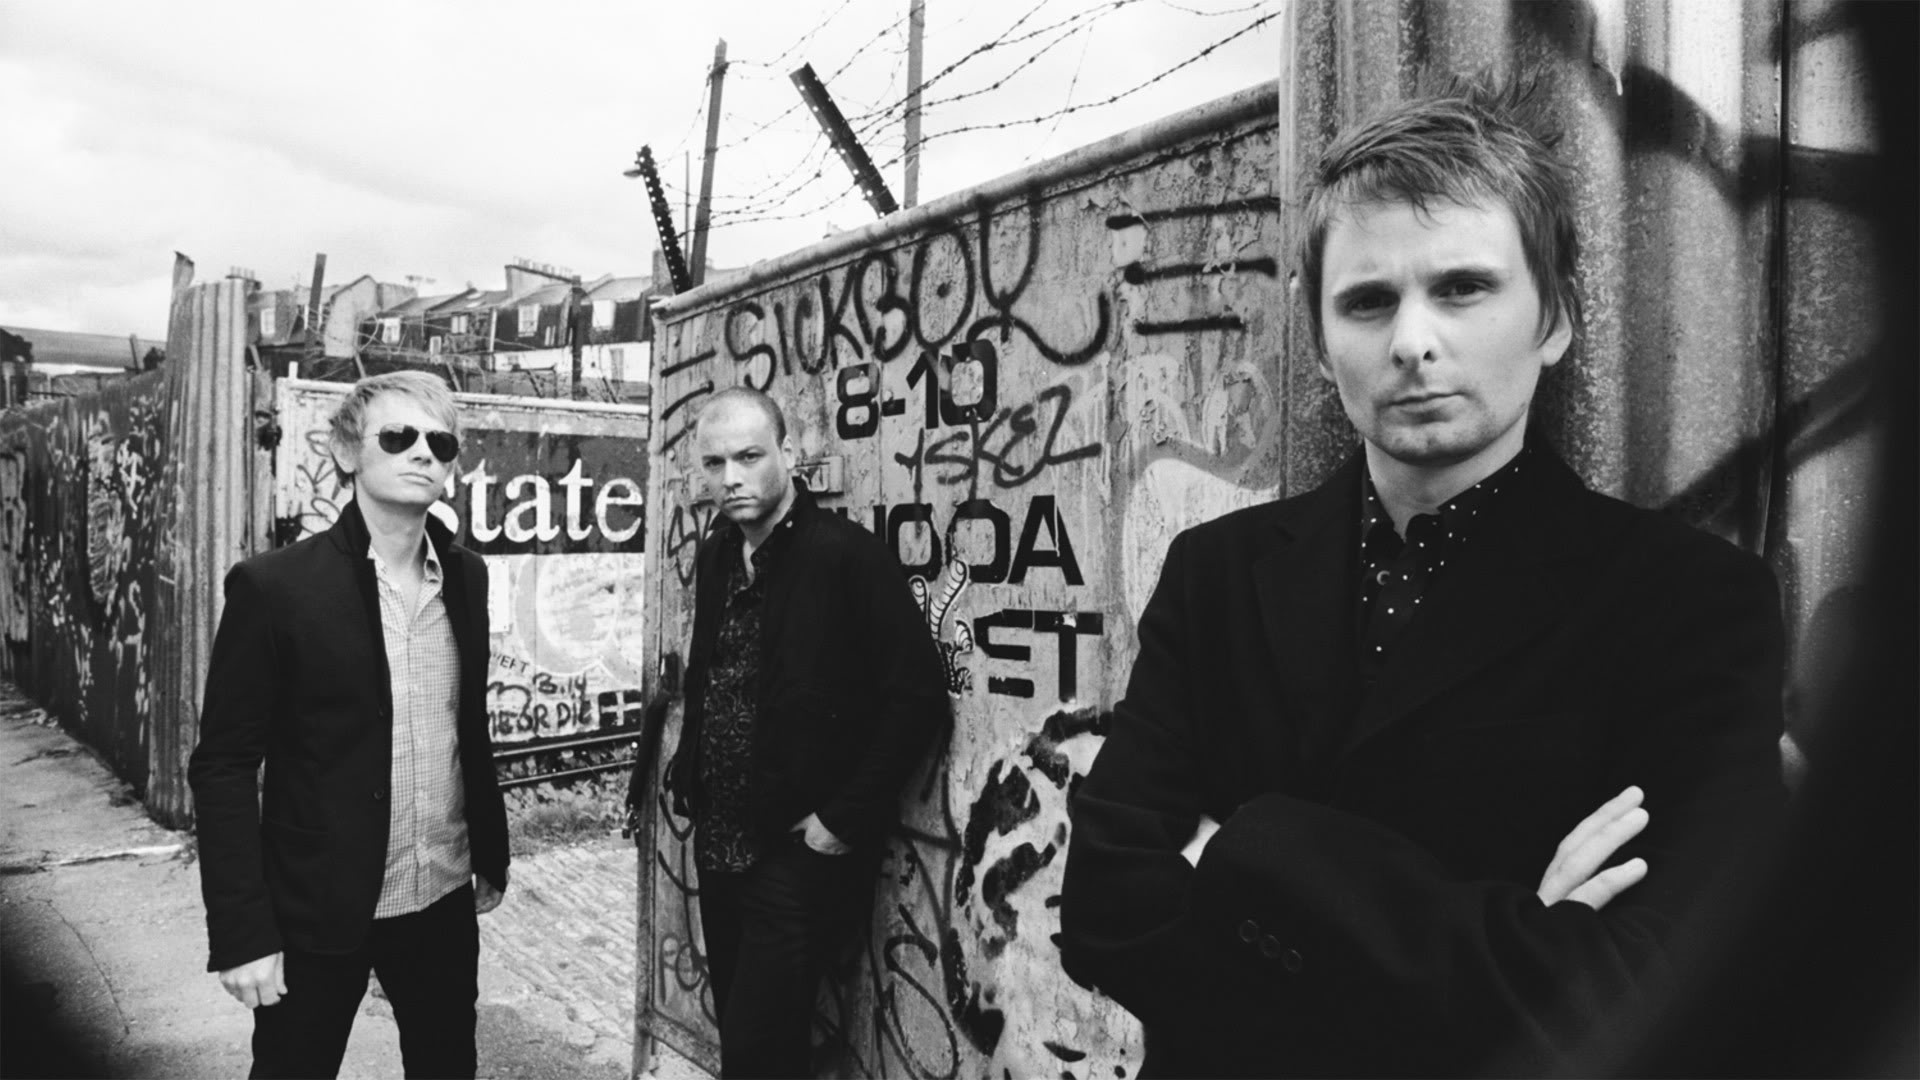 Muse viaja a los 80 en su nuevo disco ‘Simulation Theory’. Cusica Plus.